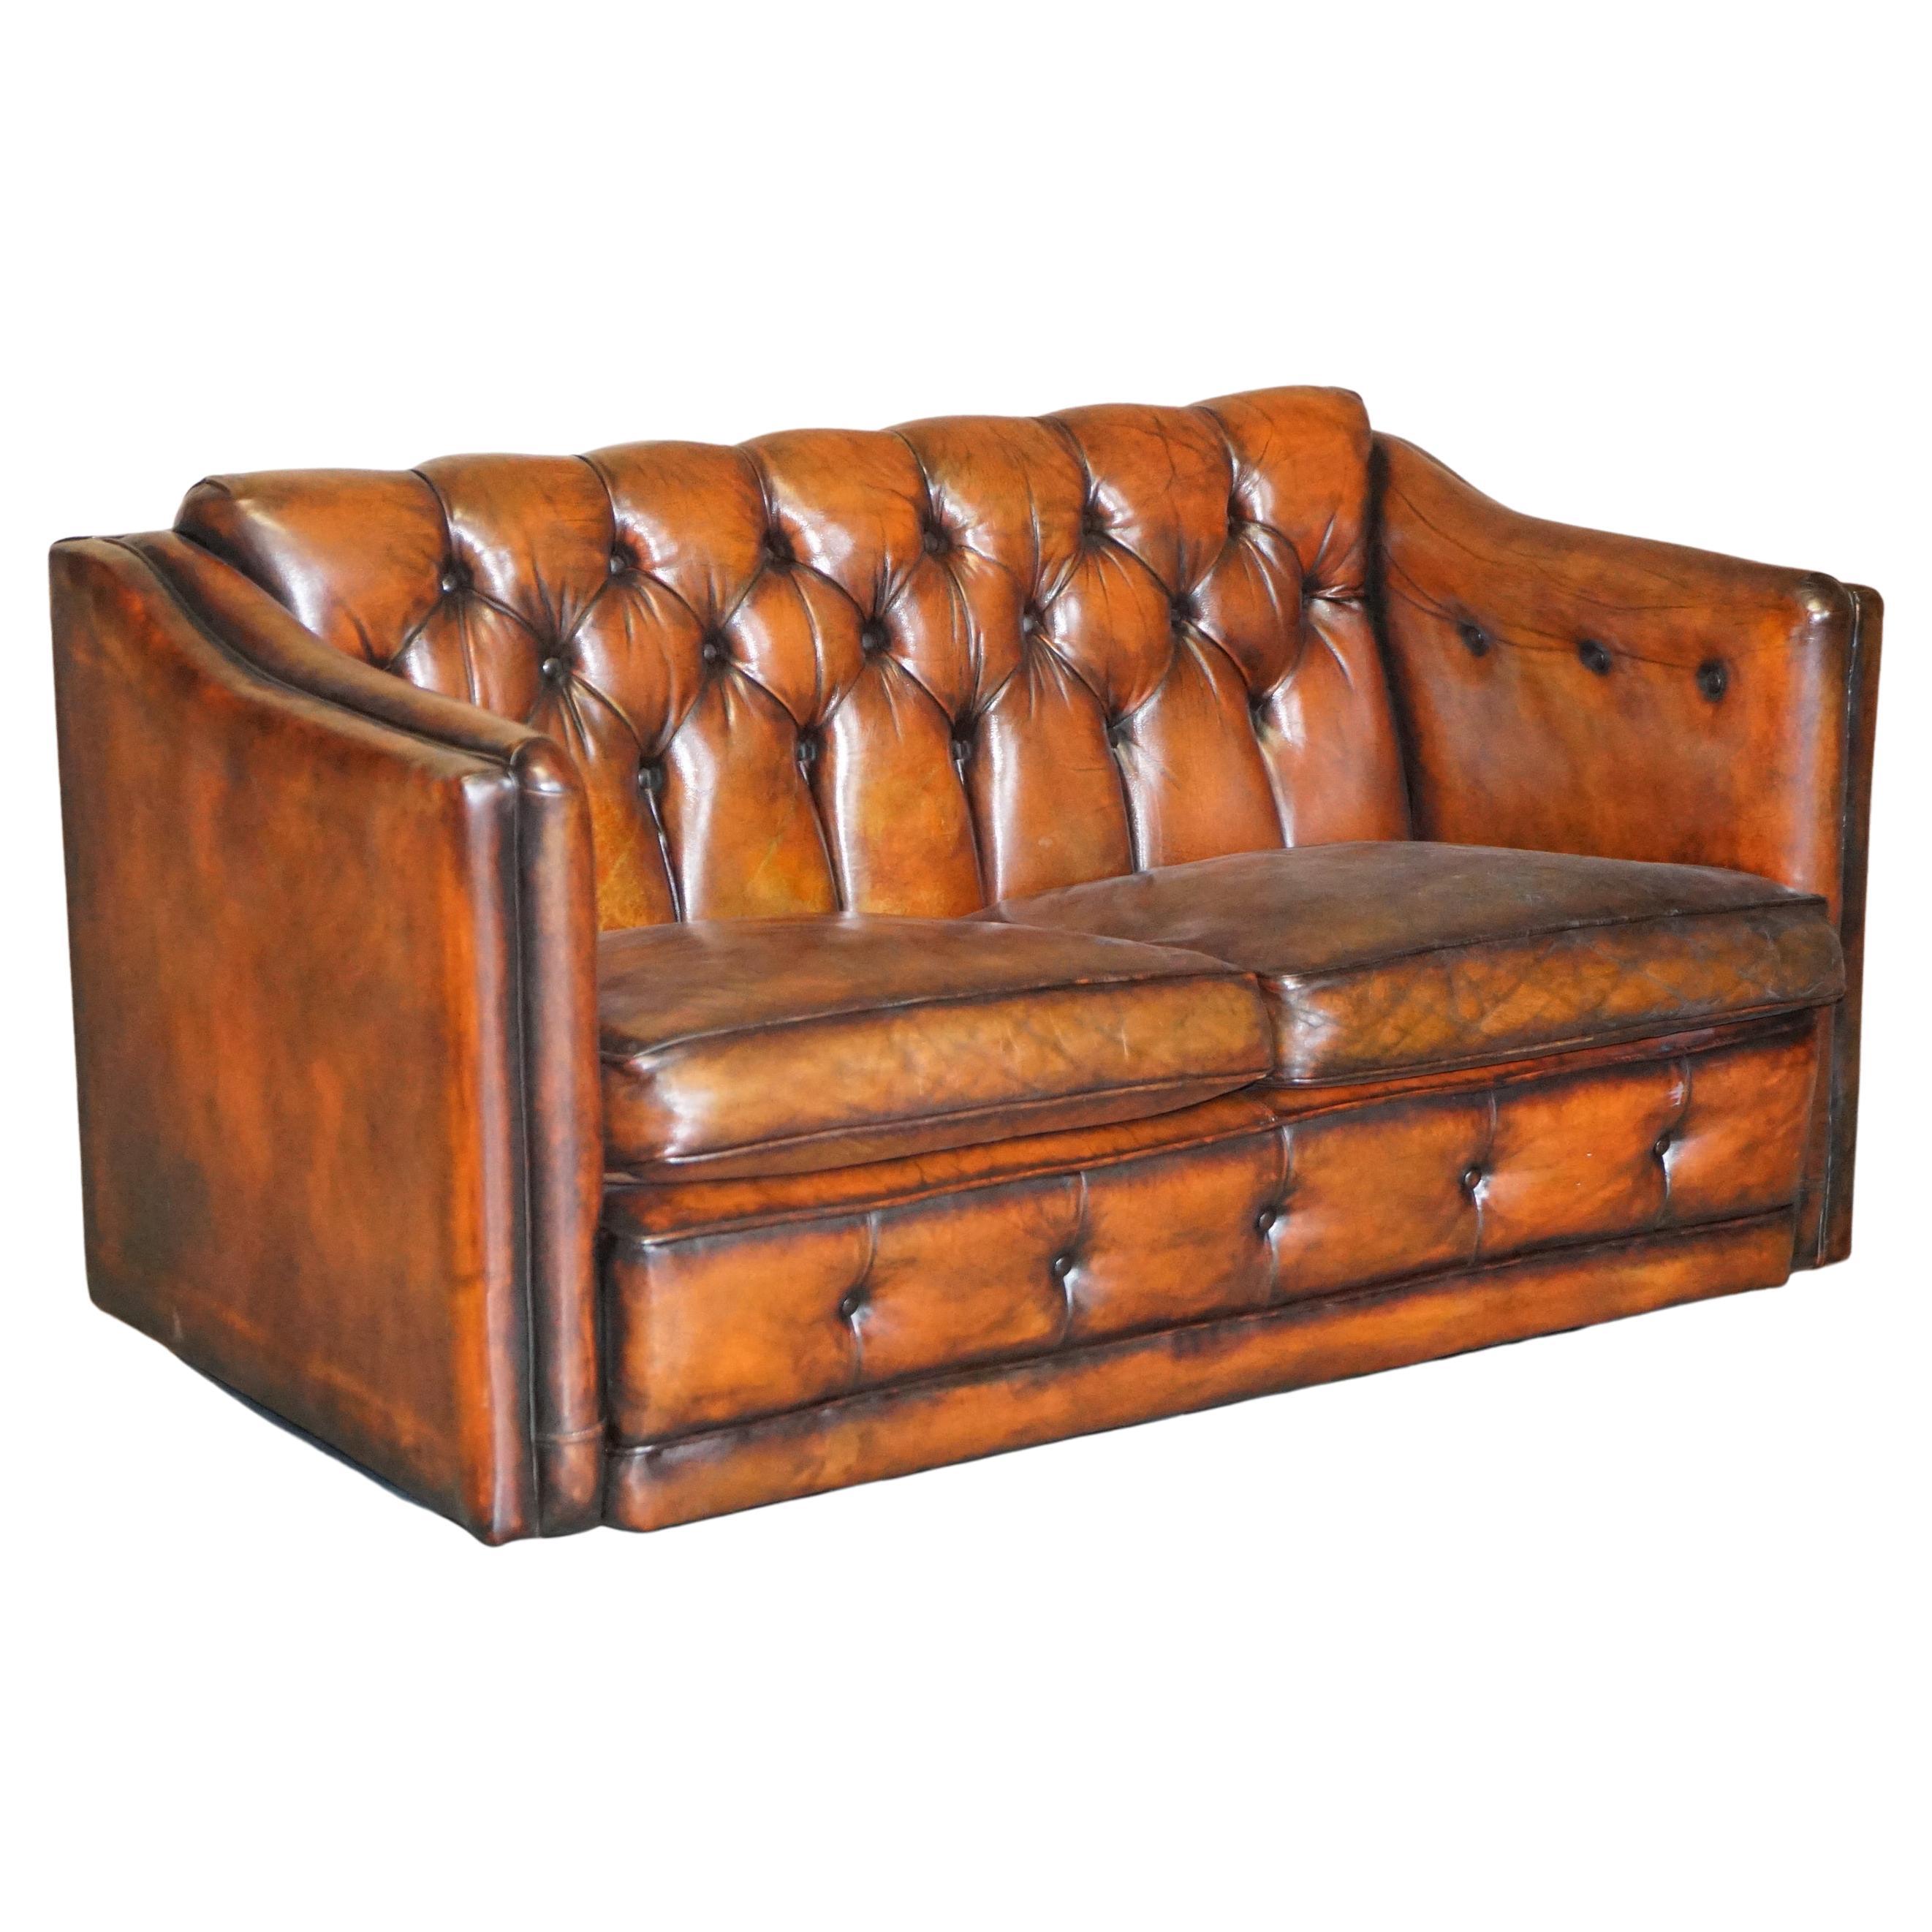 Suite de canapés en cuir marron Chesterfield entièrement restaurés de style Art Déco datant d'environ 1920